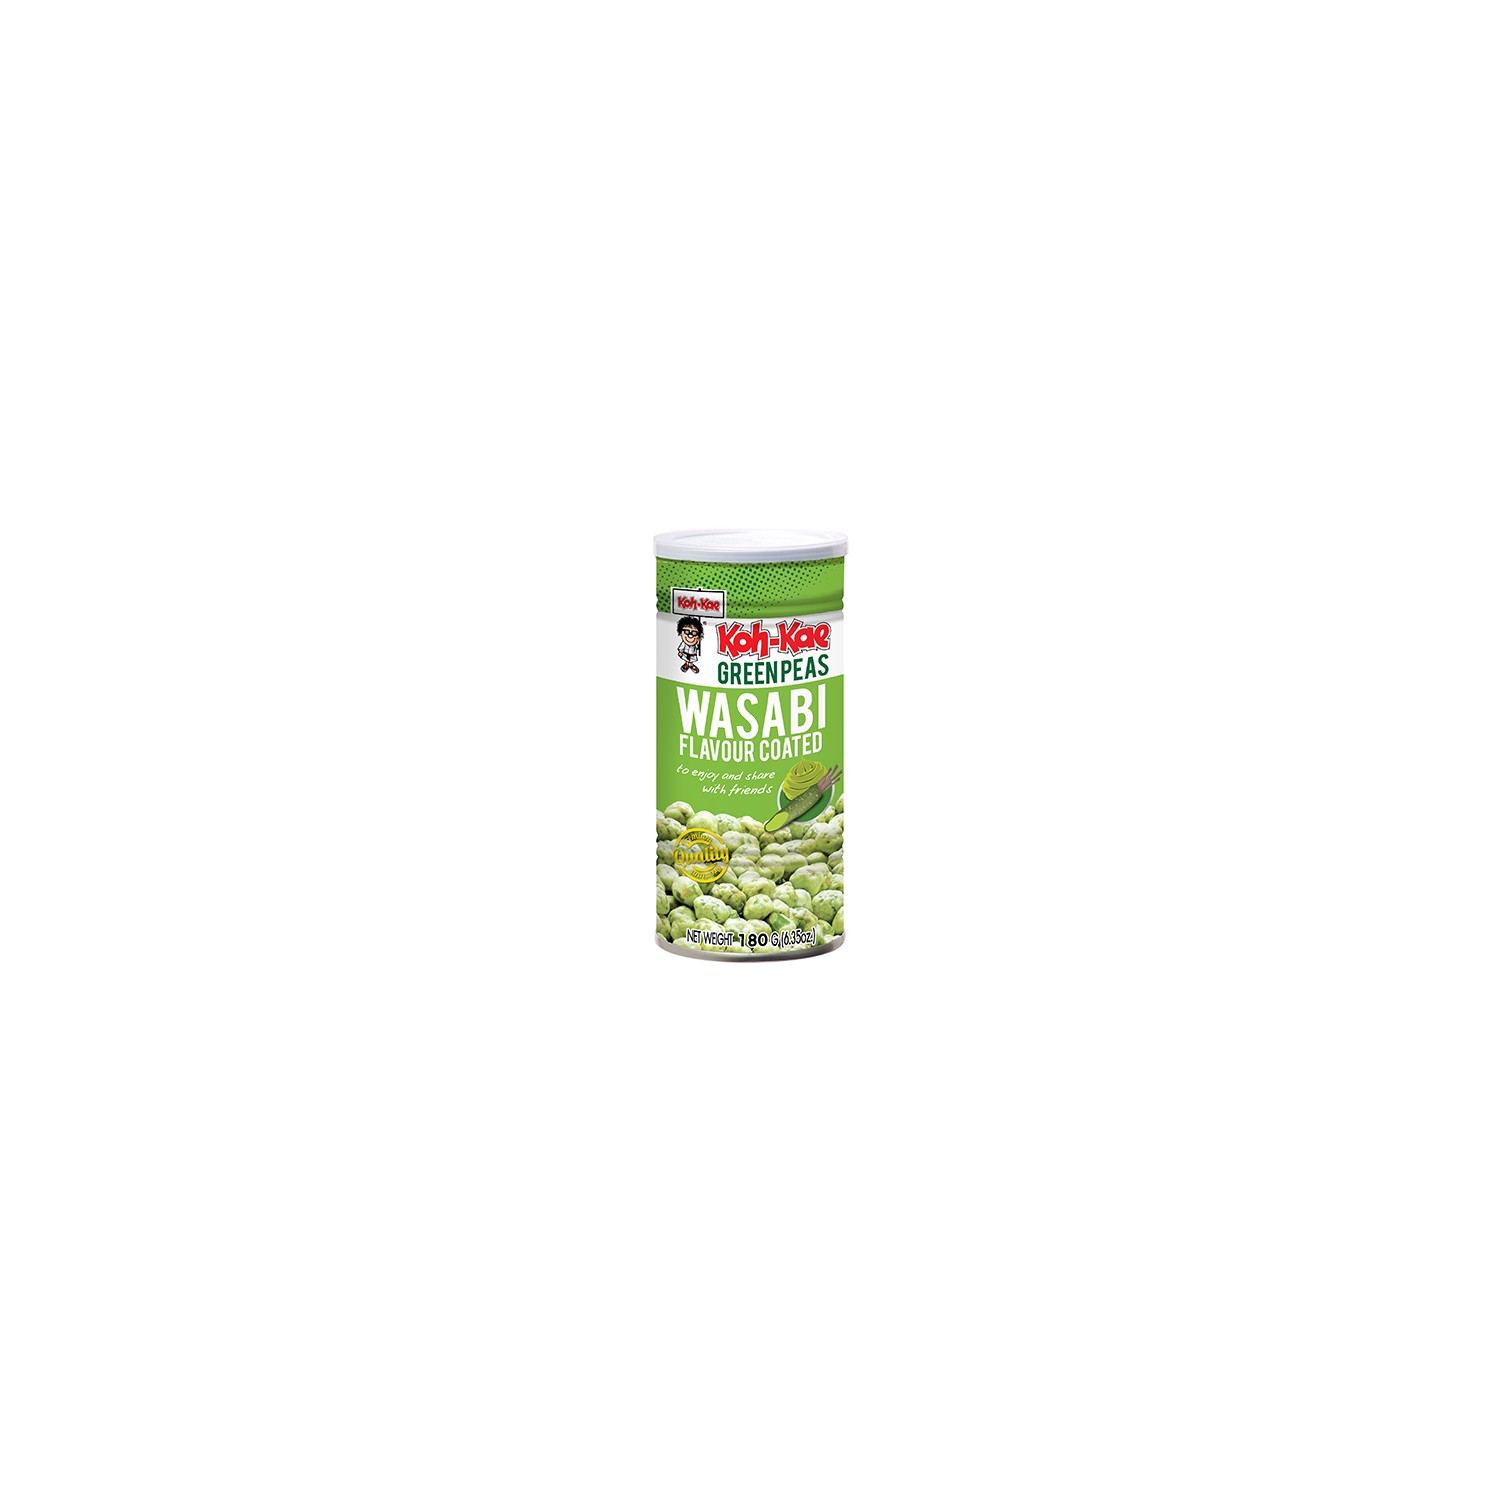 Koh-Kae Snacks (芥末味青豆) Wasabi Green Peas Snack